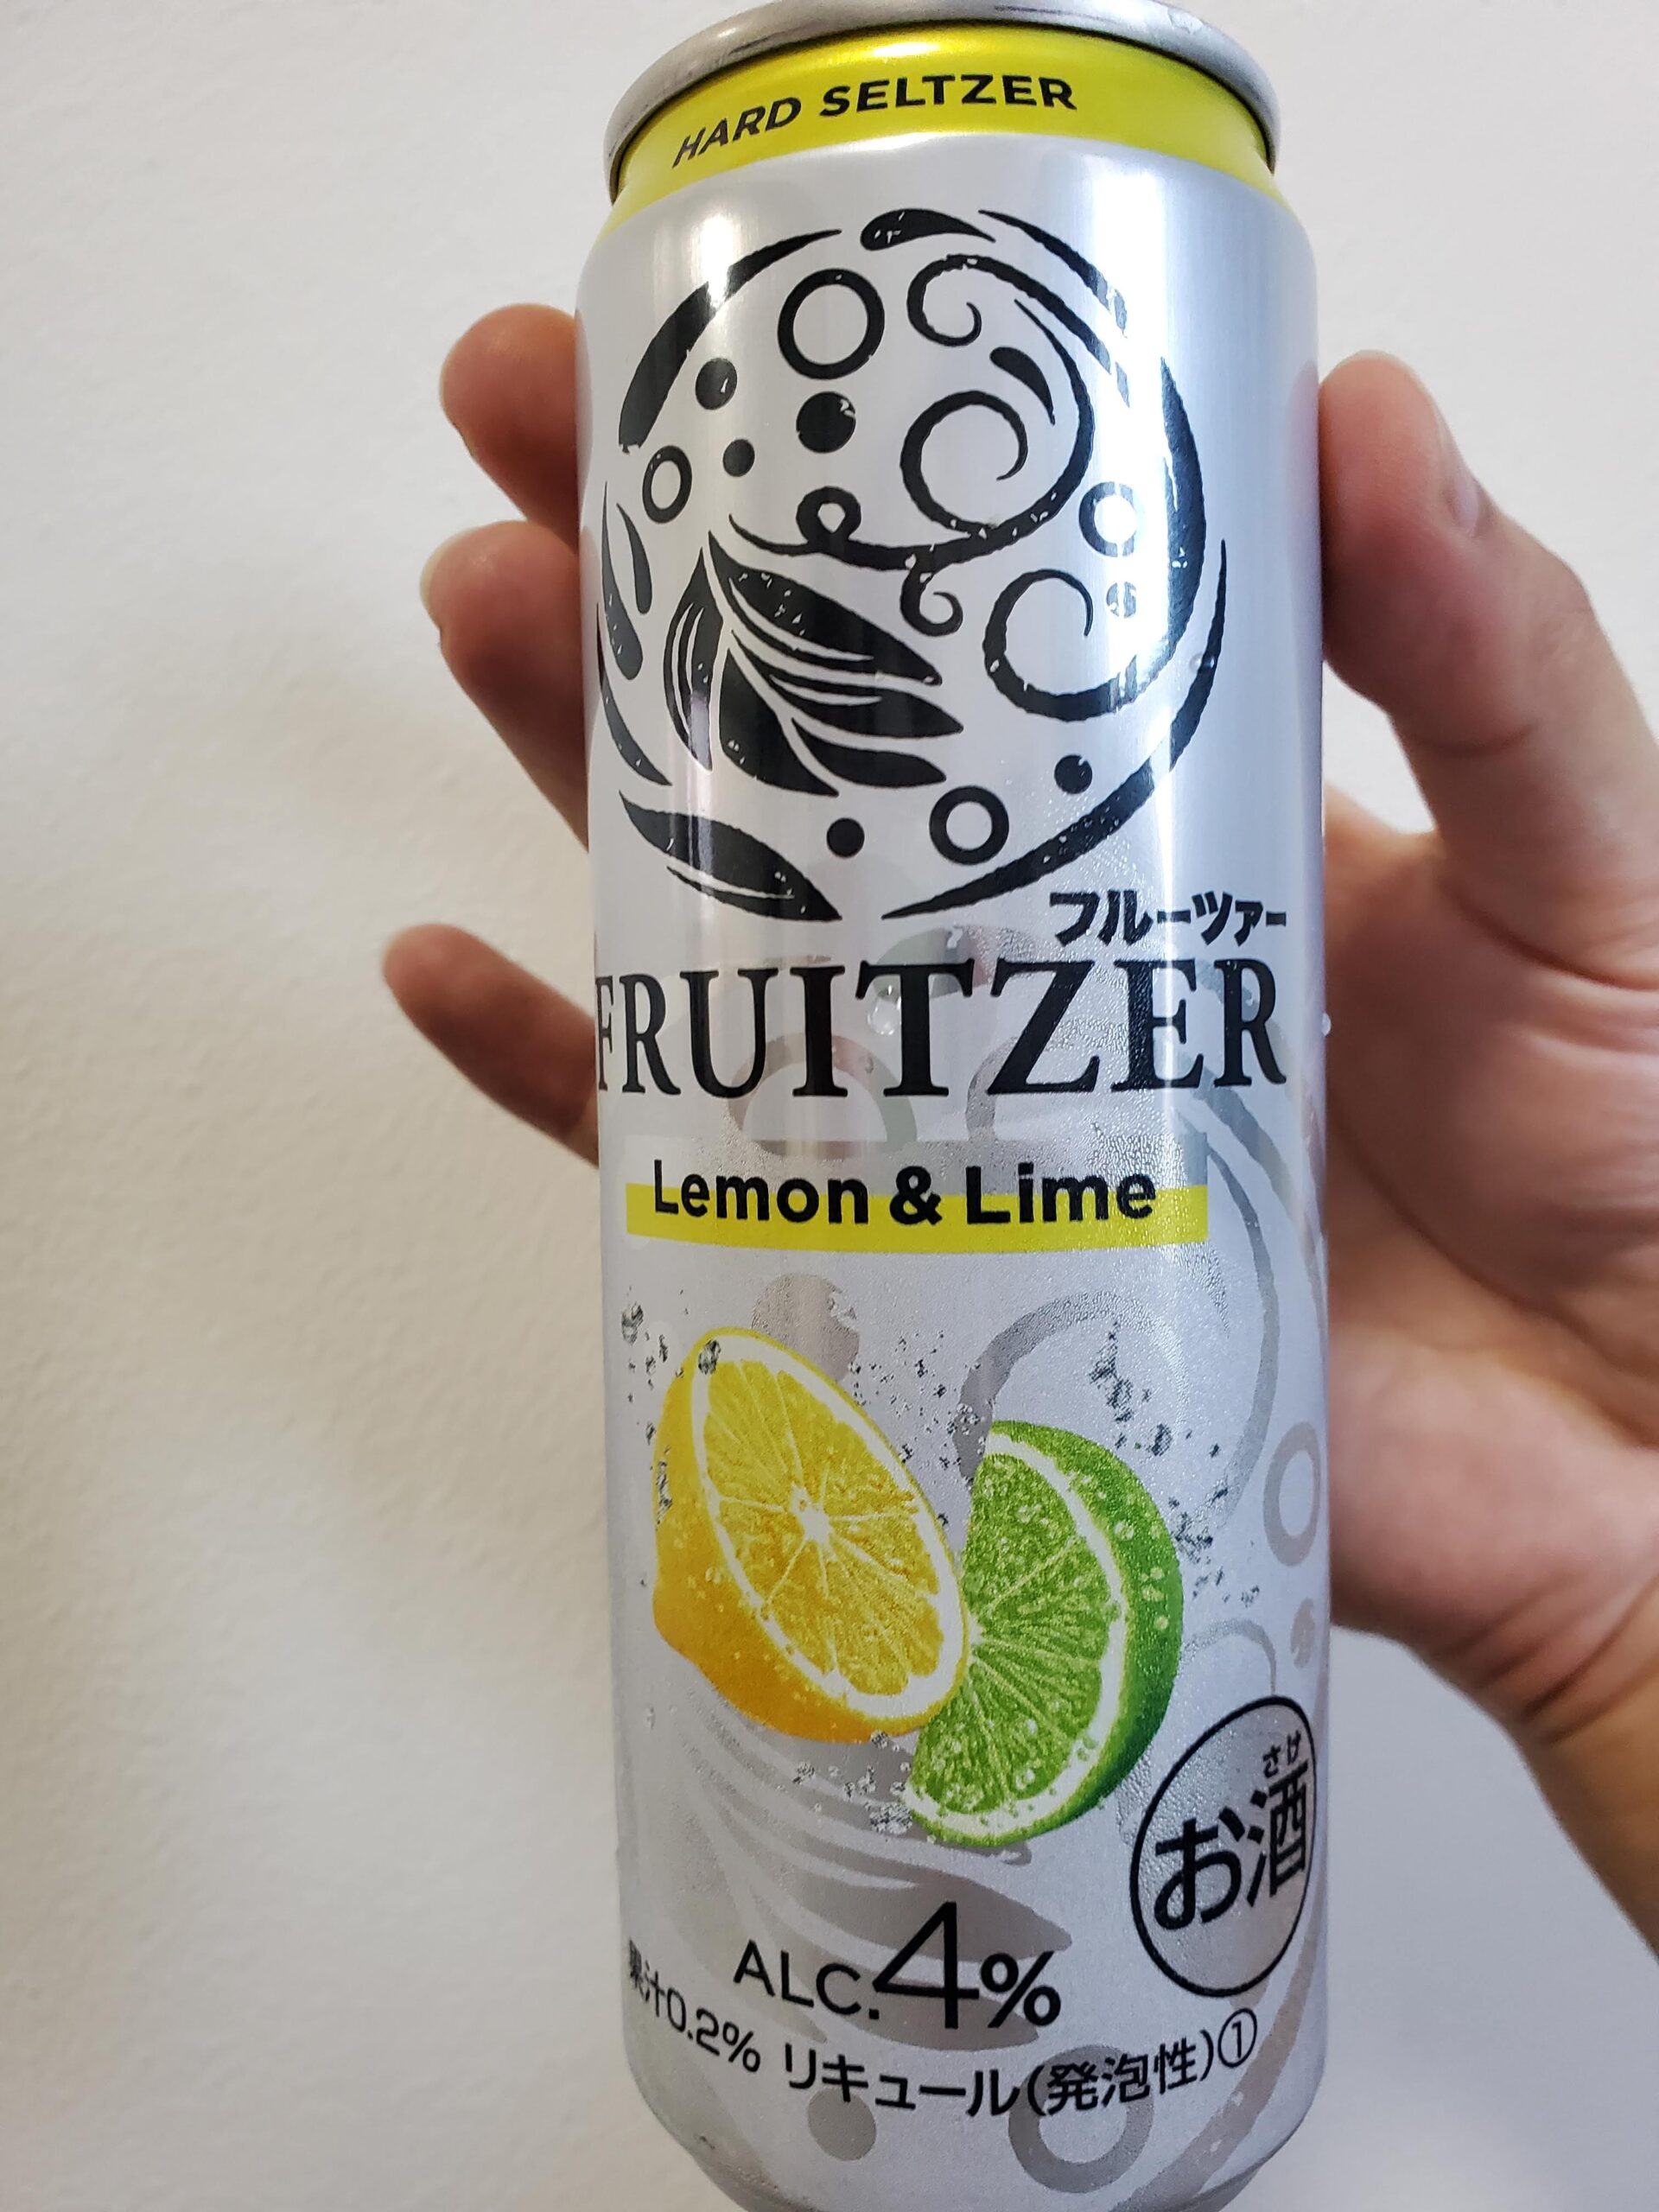 Fruitzer Lemon Lime フルーツァー レモンライム の味はうまい まずい 実際に飲んでみた Akinai Life